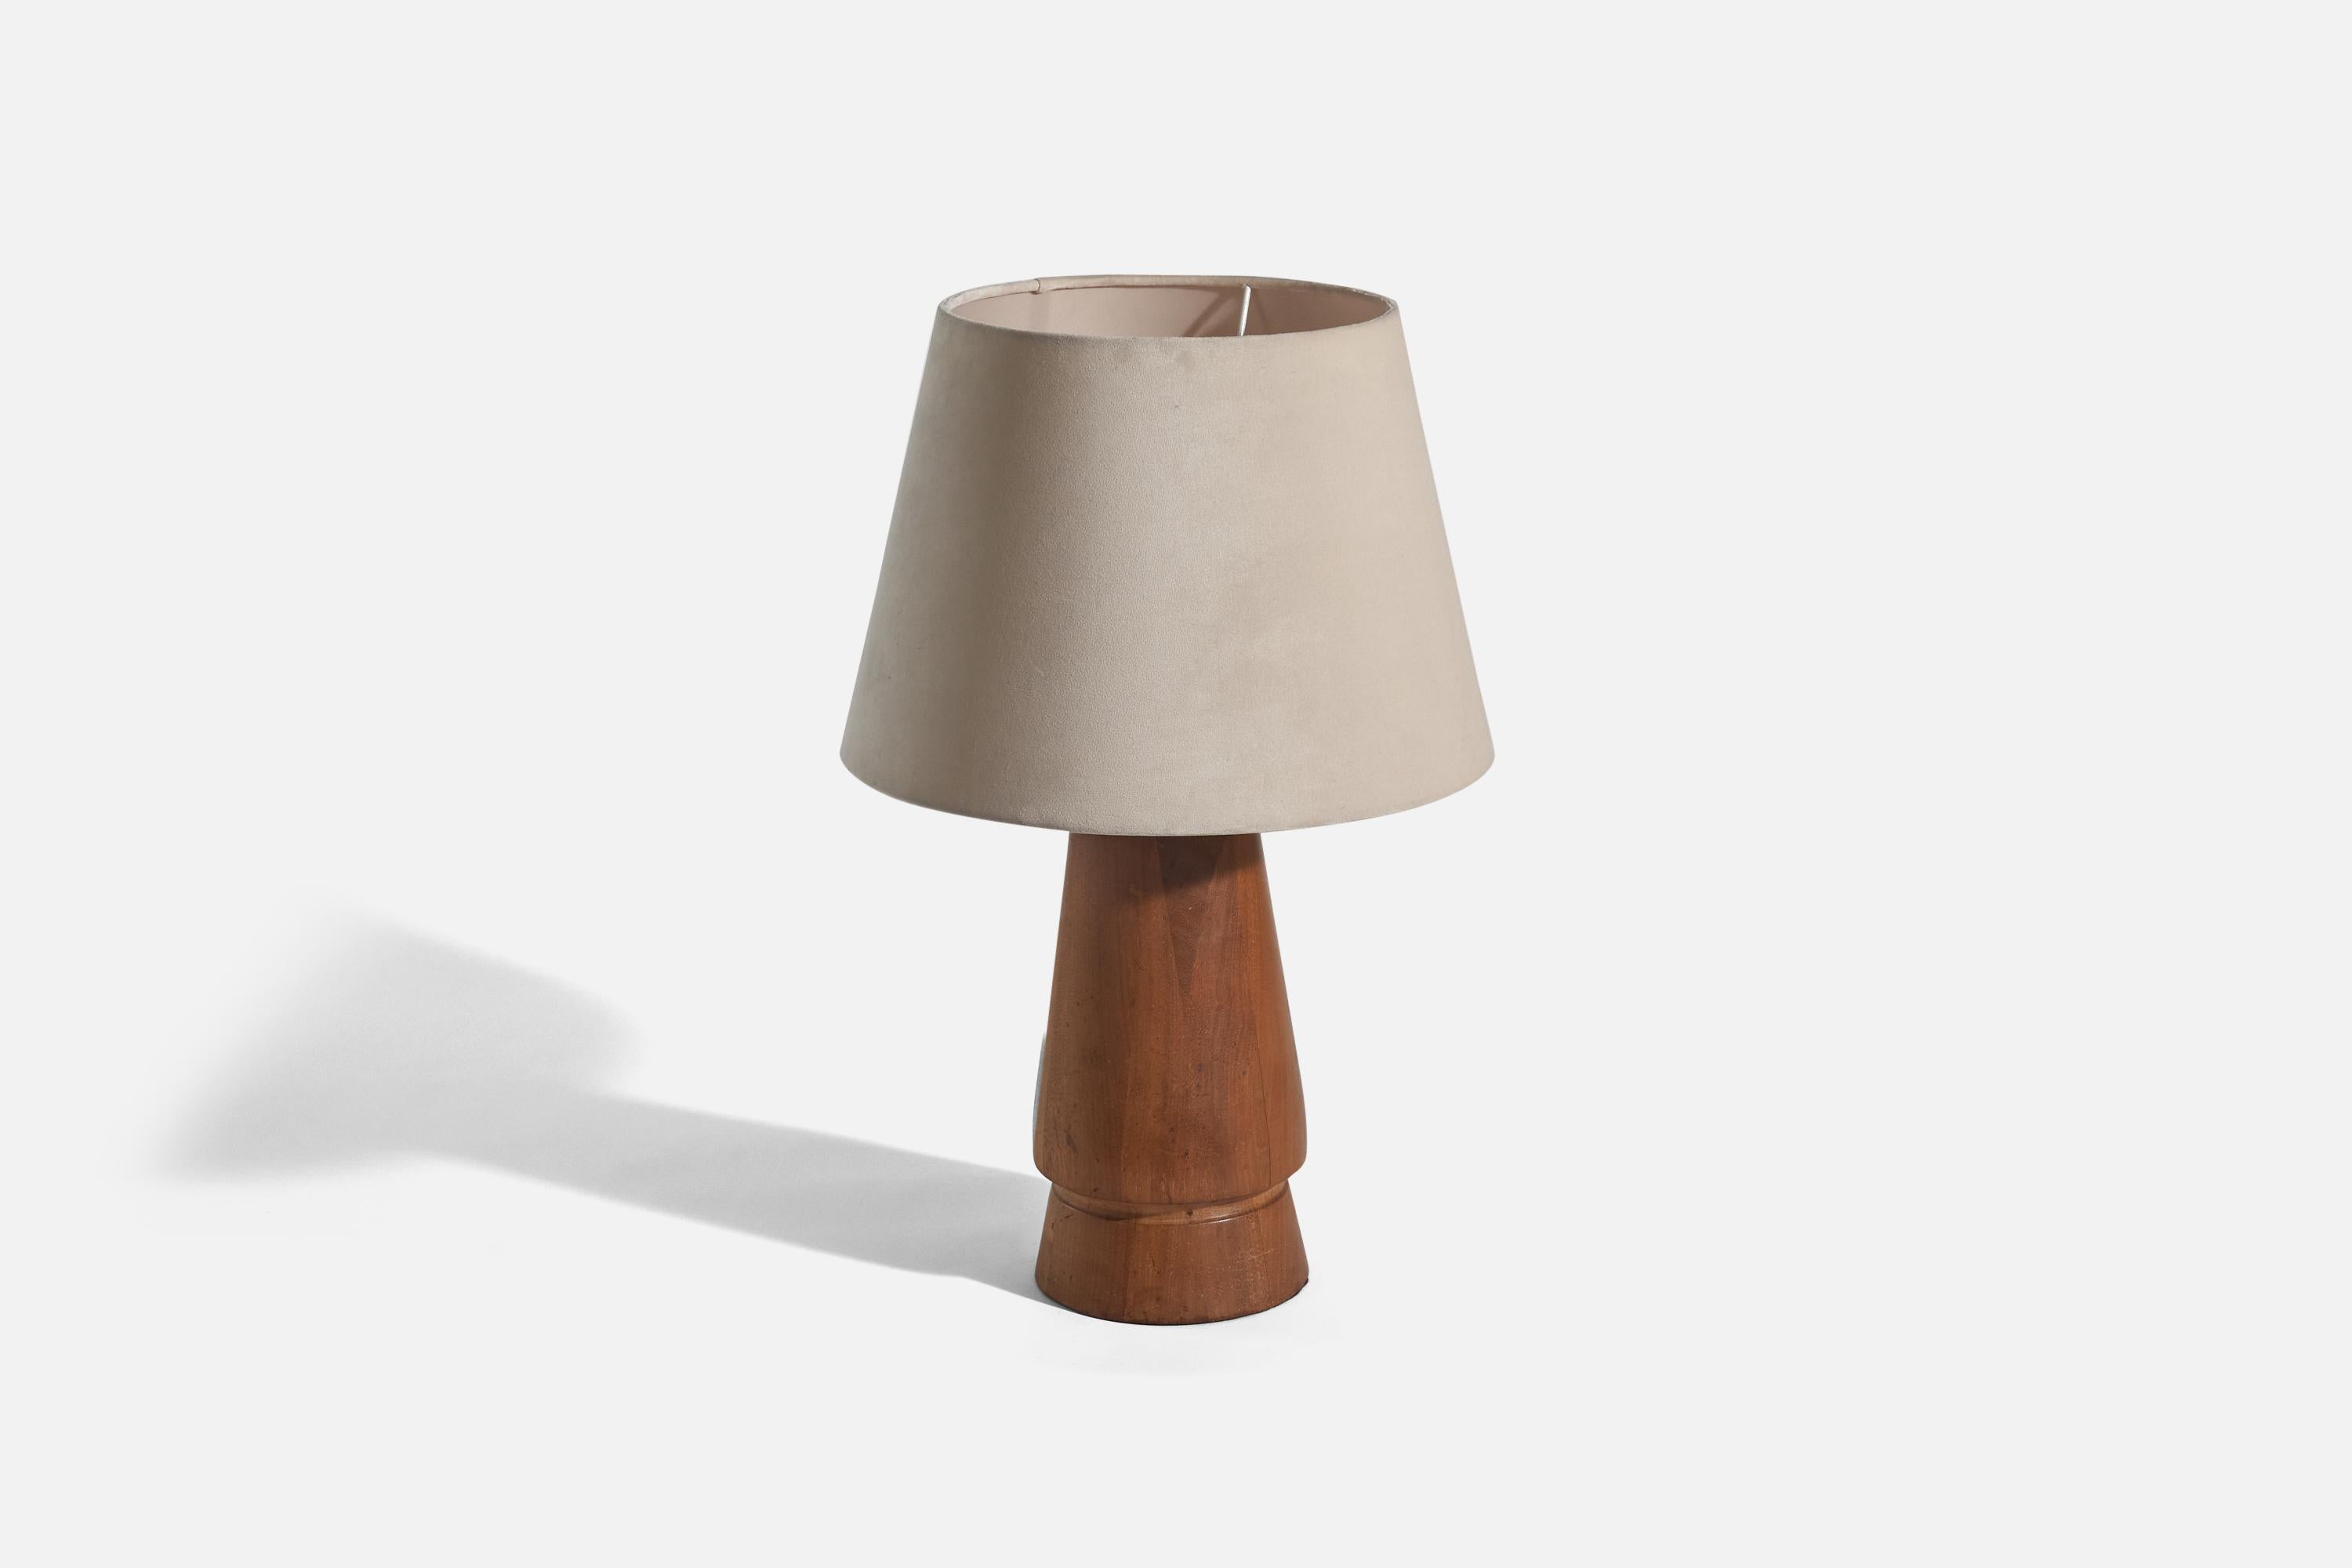 Lampe de table en bois conçue et produite au Brésil, c. années 1960. 

Vendu avec un abat-jour en tissu. 
Dimensions de la lampe (pouces) : 14.62 x 6 x 6 (hauteur x largeur x profondeur)
Dimensions de l'abat-jour (pouces) : 9,5 x 13,87 x 9,75